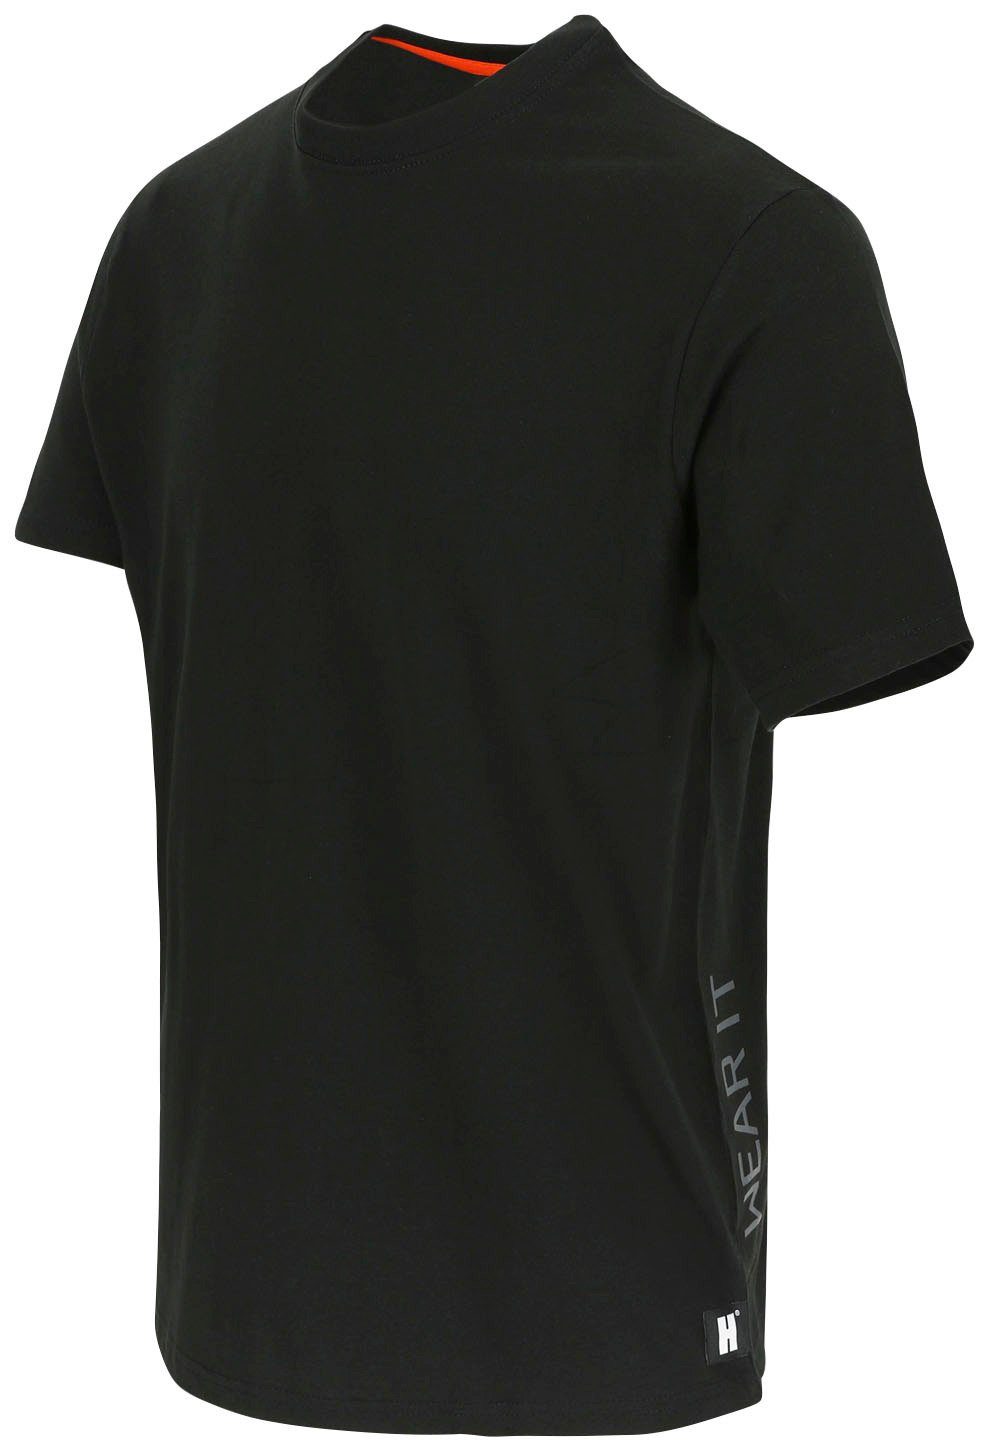 kurze schwarz T-Shirt Rippstrickkragen Ärmel, T-Shirt Ärmel Rundhalsausschnitt, Herock®-Aufdruck, Herock kurze Callius